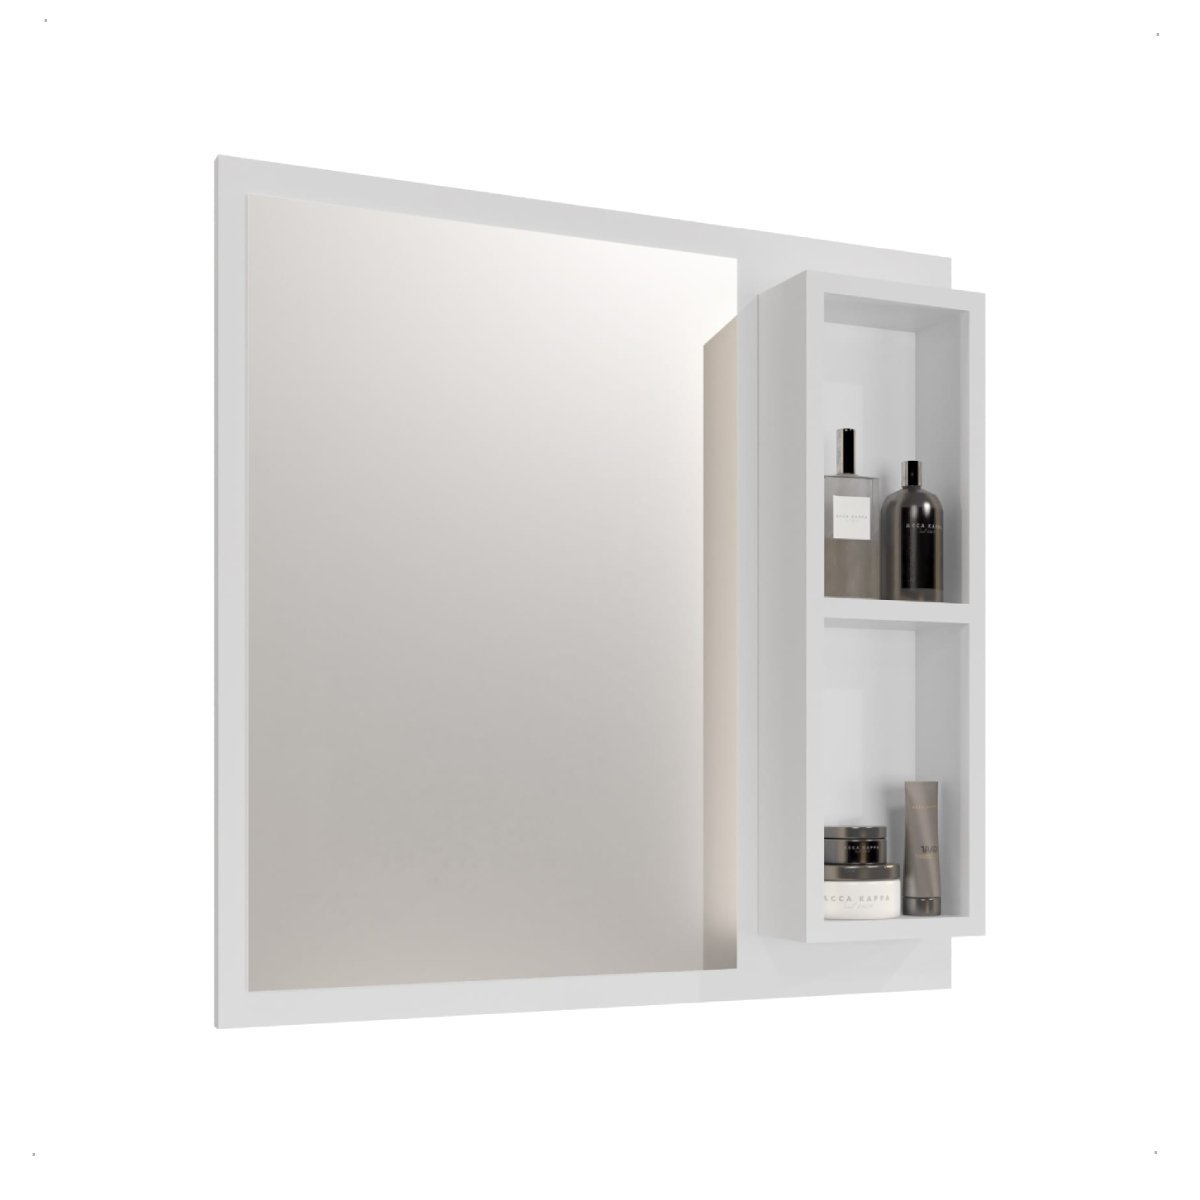 Espelheira Armário para Banheiro Espelho Cronos Várias Cores:branco - 1